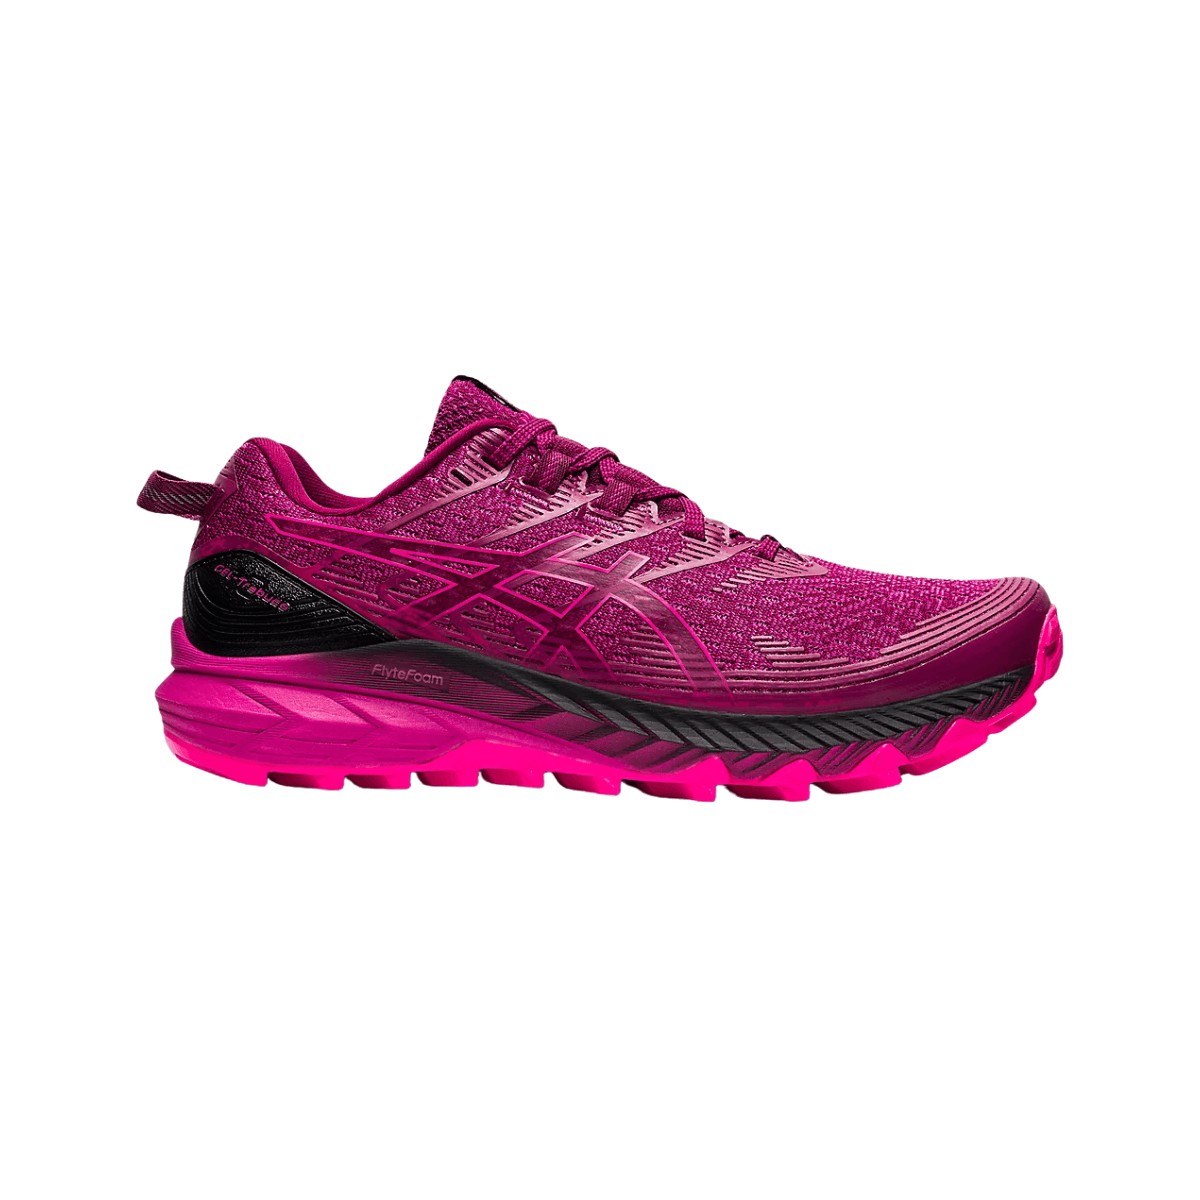 Schuhe Asics Gel-Trabuco 10 Schwarz Pink AW22 Frau, Größe 40,5 - EUR